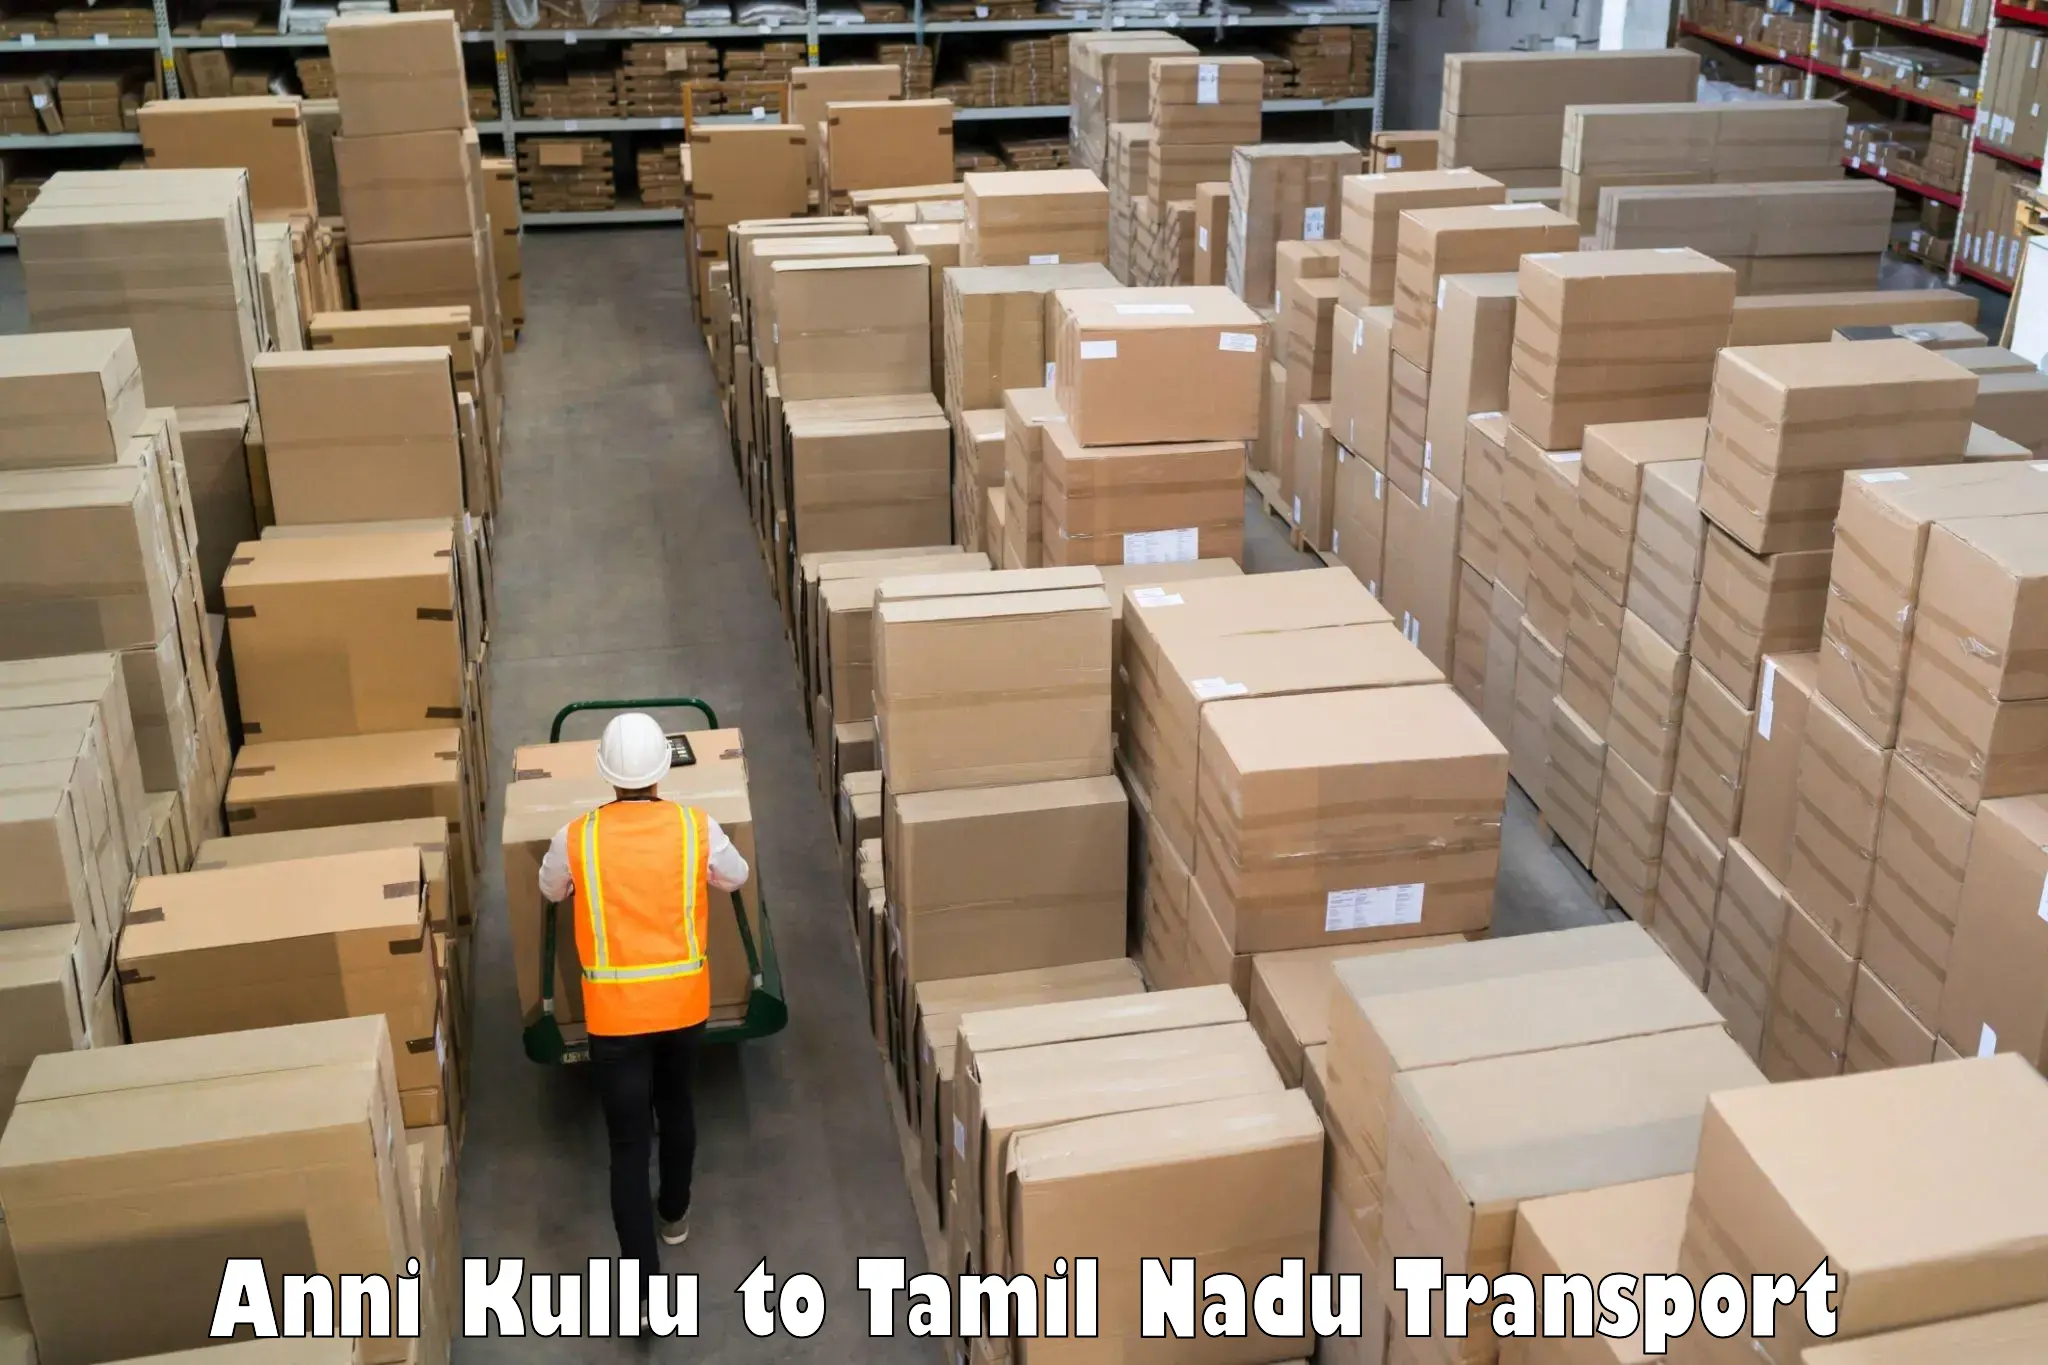 Container transport service Anni Kullu to Tiruturaipundi